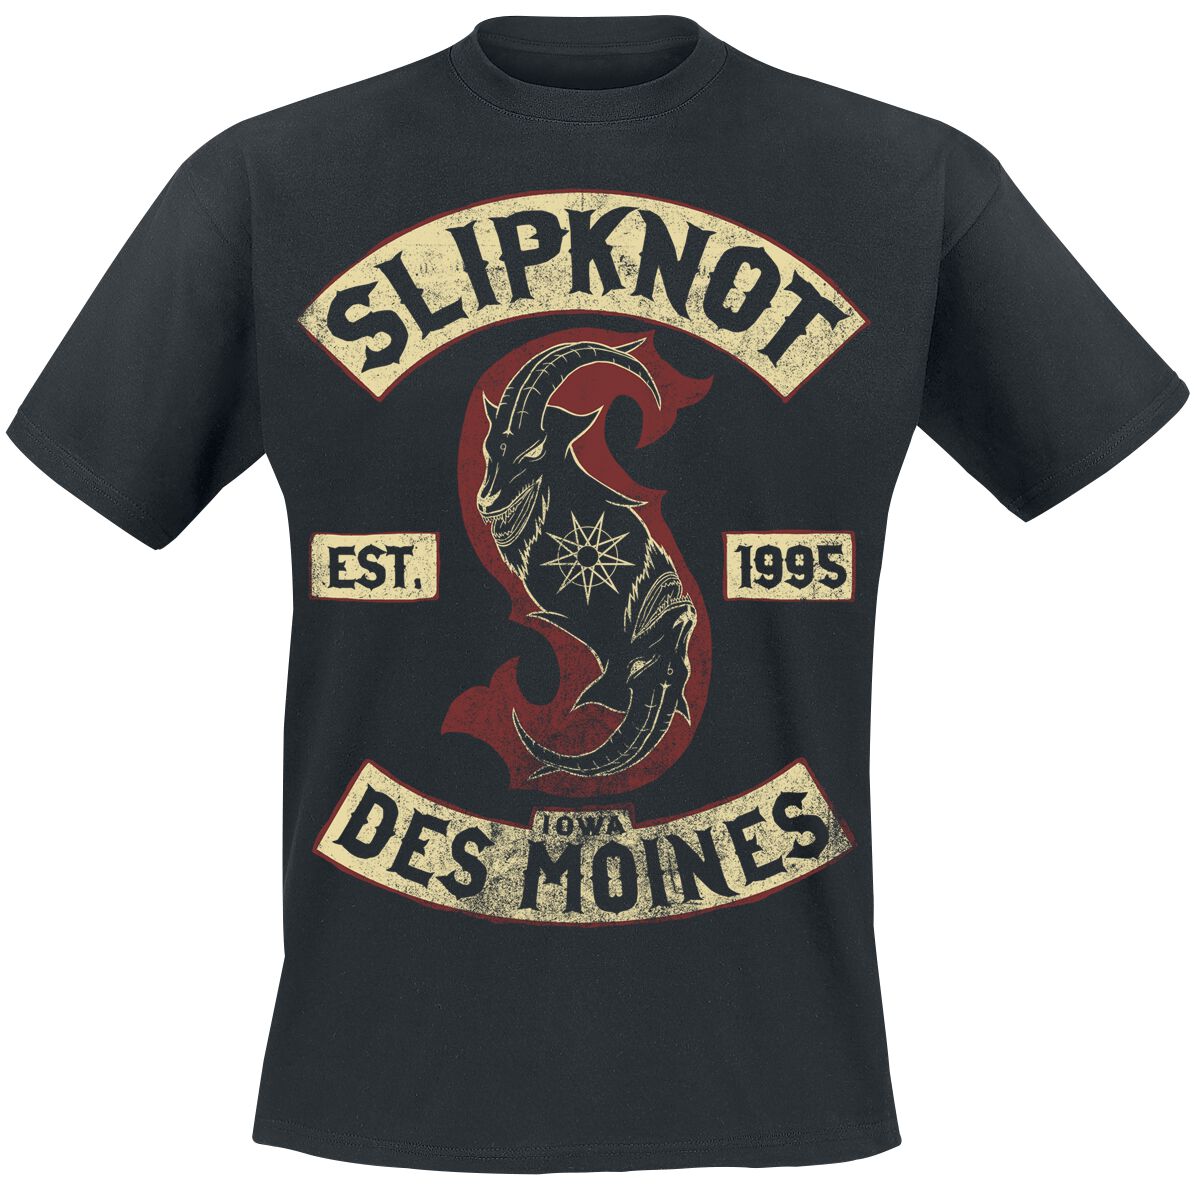 Slipknot T-Shirt - Iowa Des Moines - S bis 3XL - für Männer - Größe M - schwarz  - Lizenziertes Merchandise!